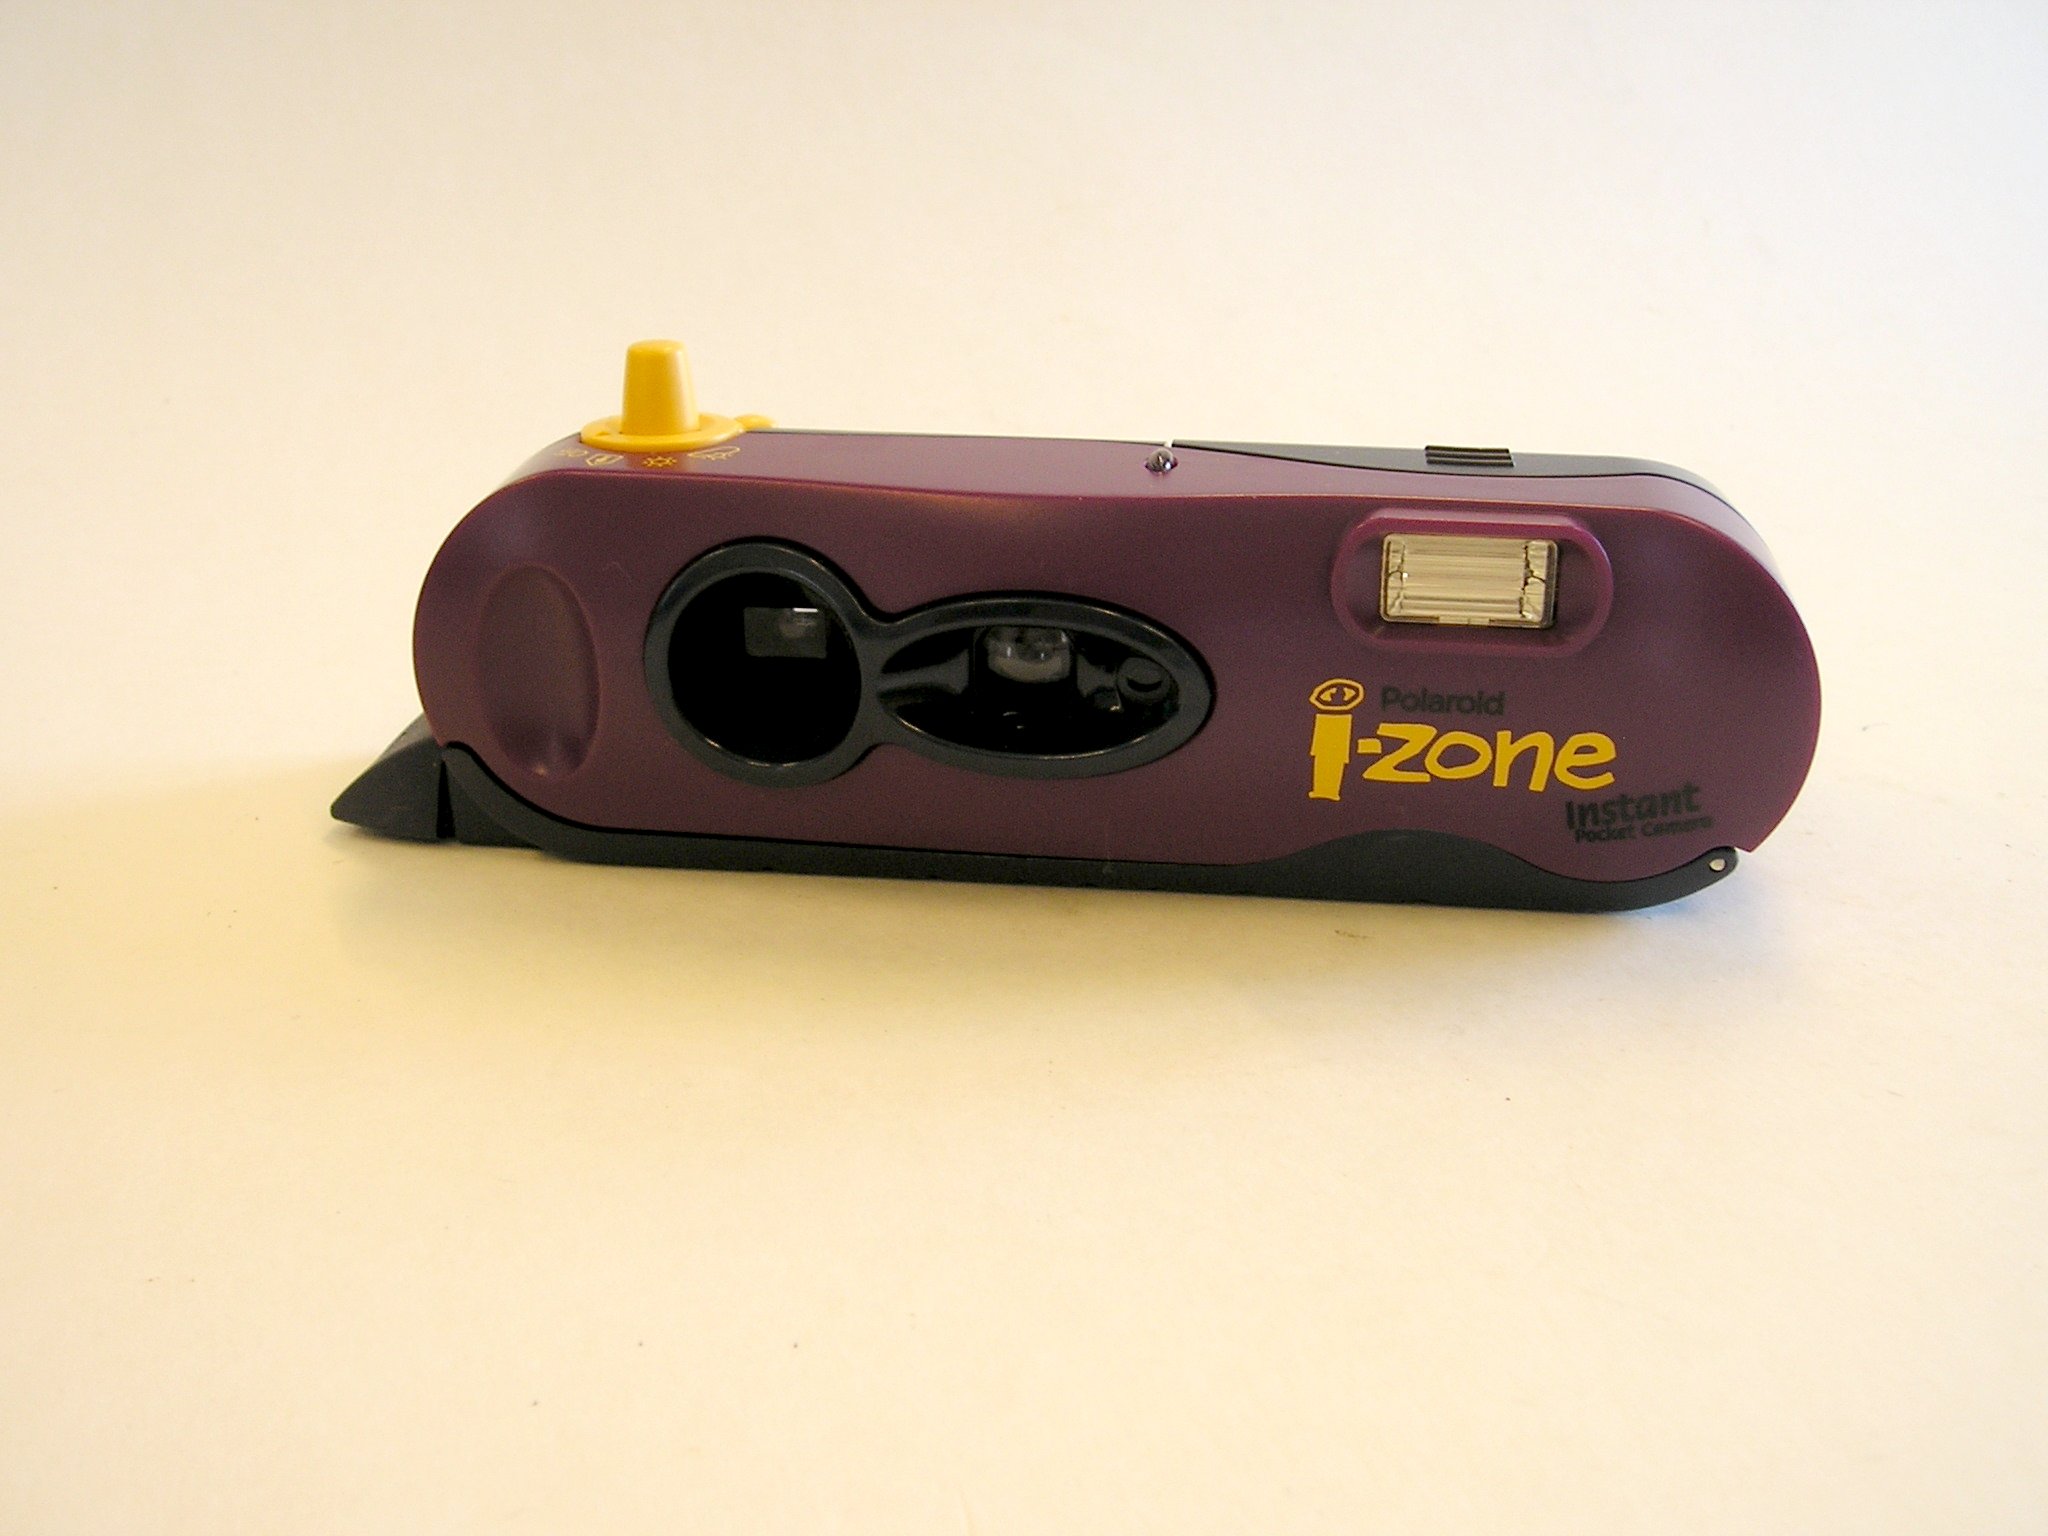 Polaroid i-zone pocket camera